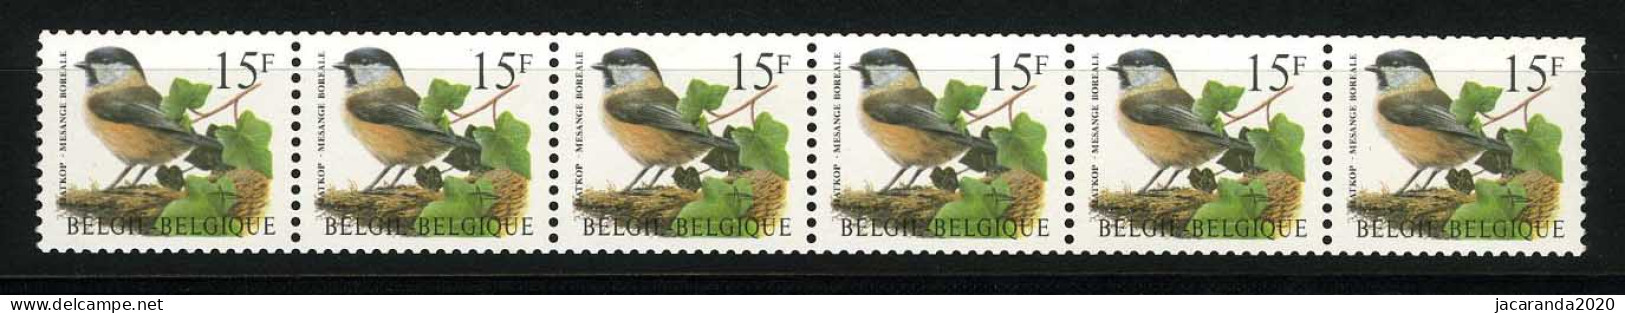 België R81a - Vogels - Oiseaux - Buzin (2732) - Strook Van 6 ZONDER NUMMER - SANS NUMERO - ZELDZAAM - RARE - Coil Stamps